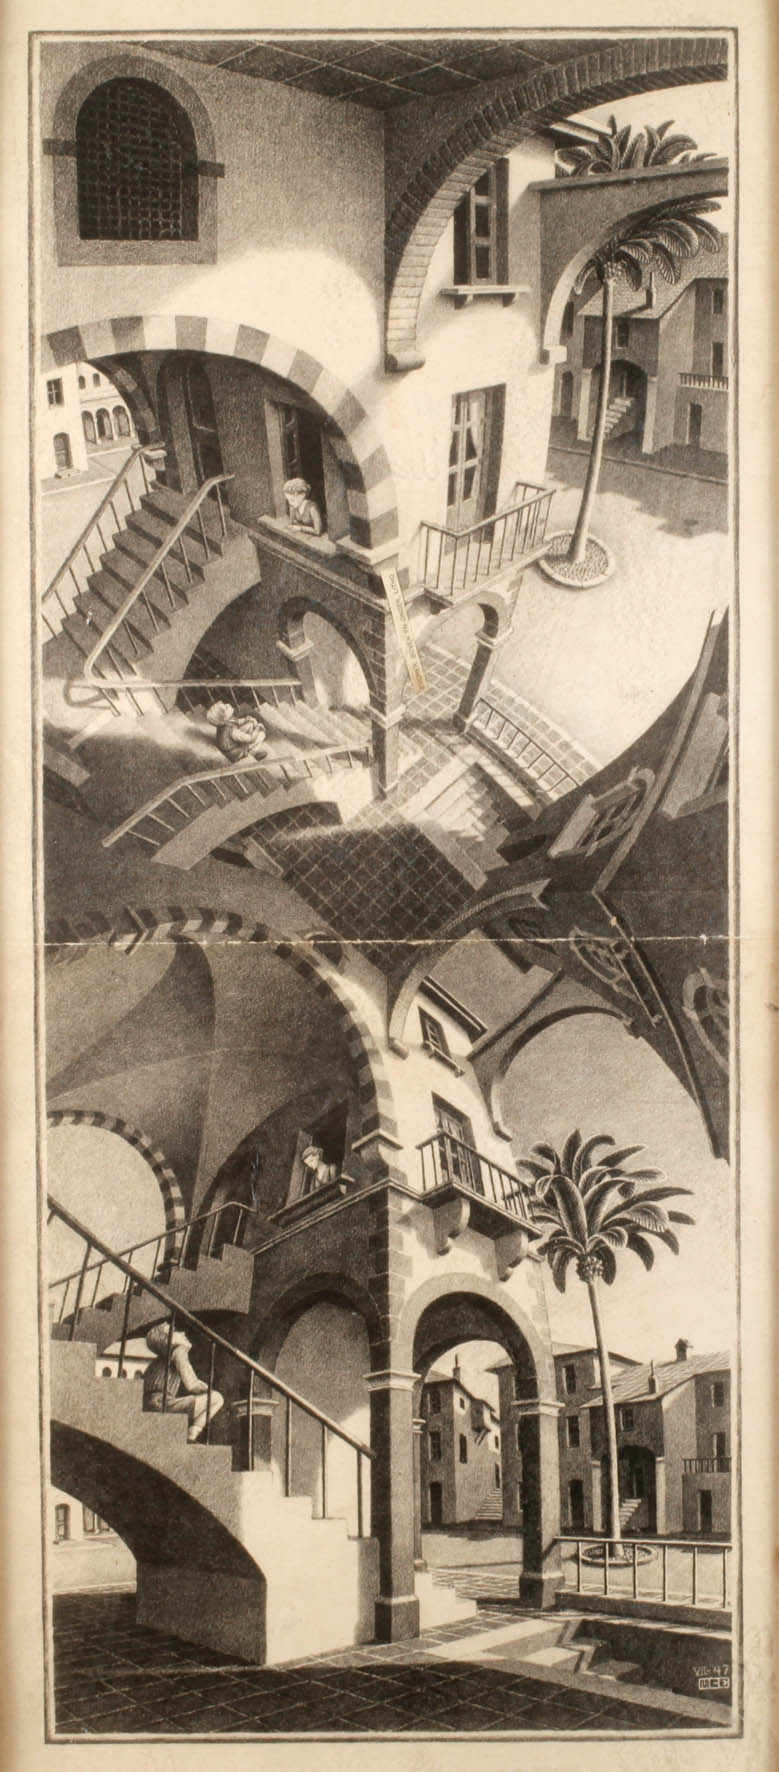 Maurits Cornelis Escher, ”Boven en onder”